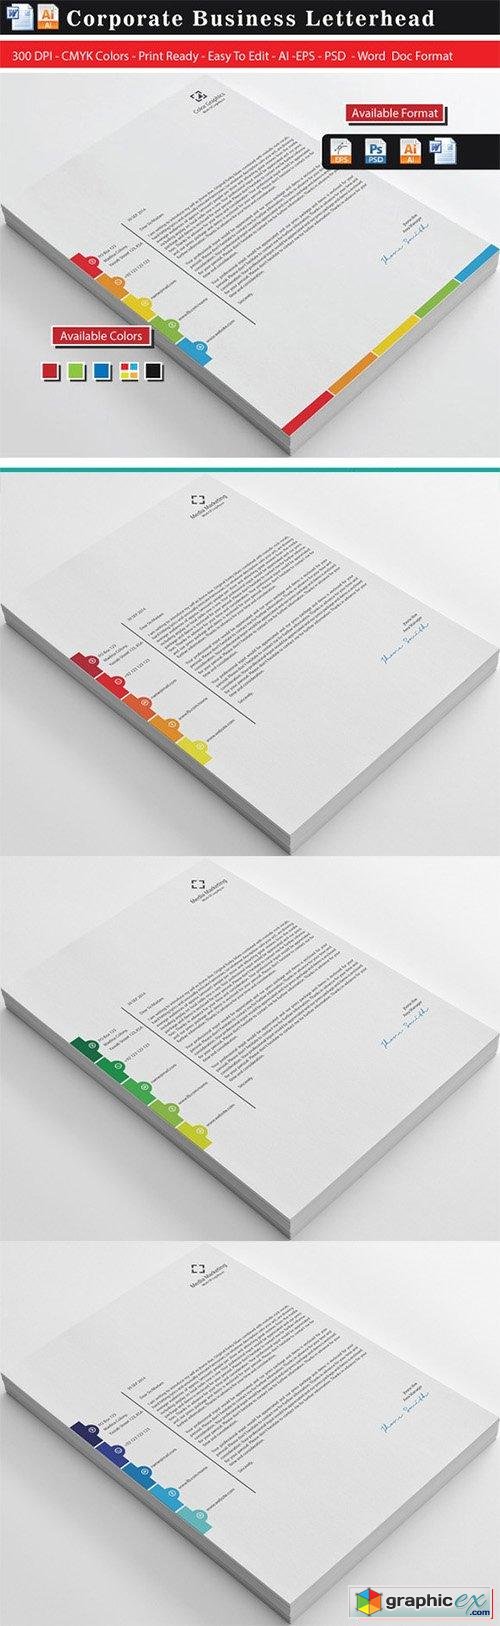 Unique Color Graphics Letterhead